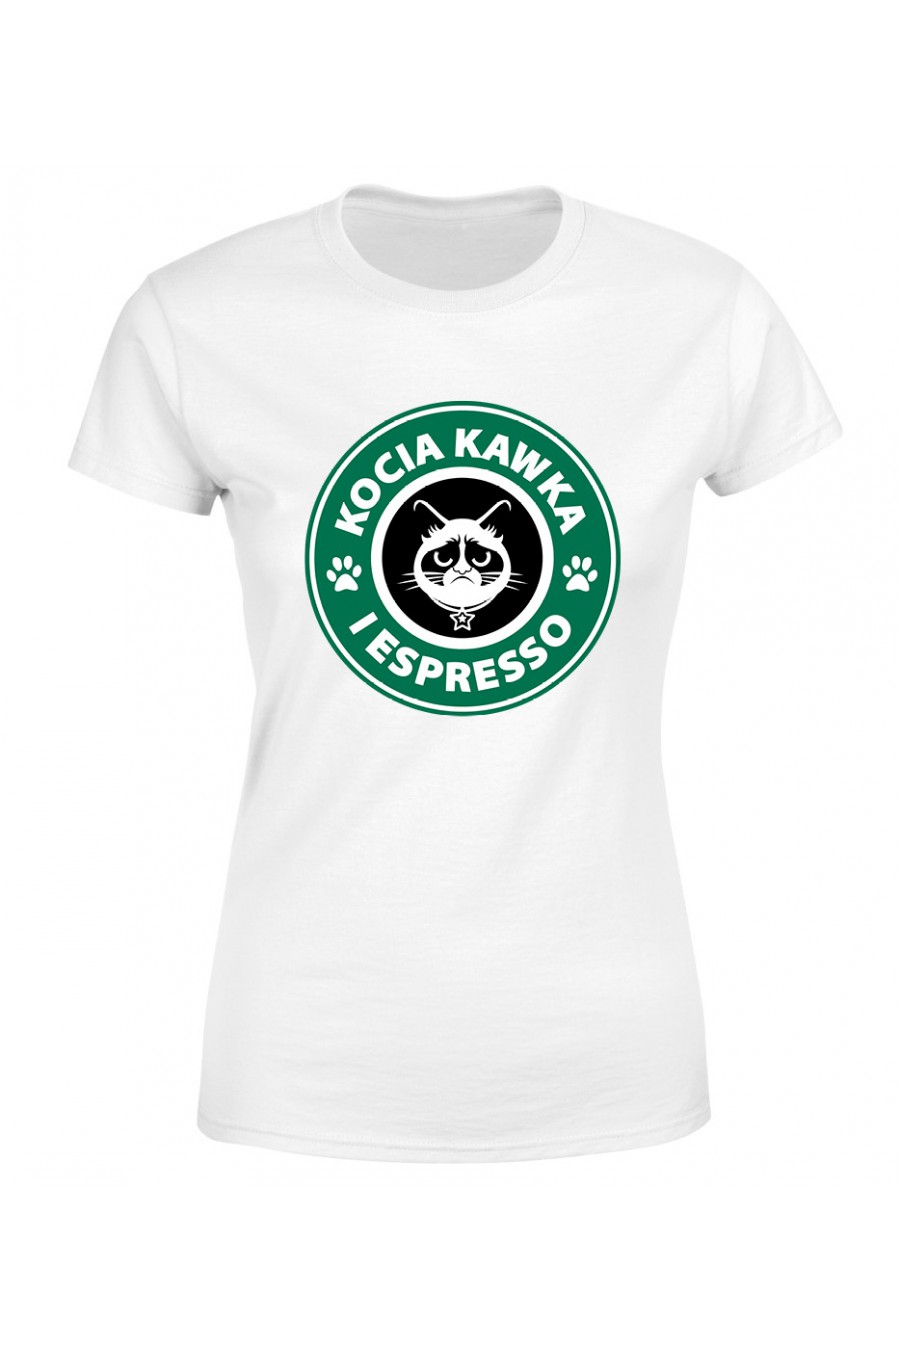 Koszulka Damska Kocia Kawka I Espresso 2